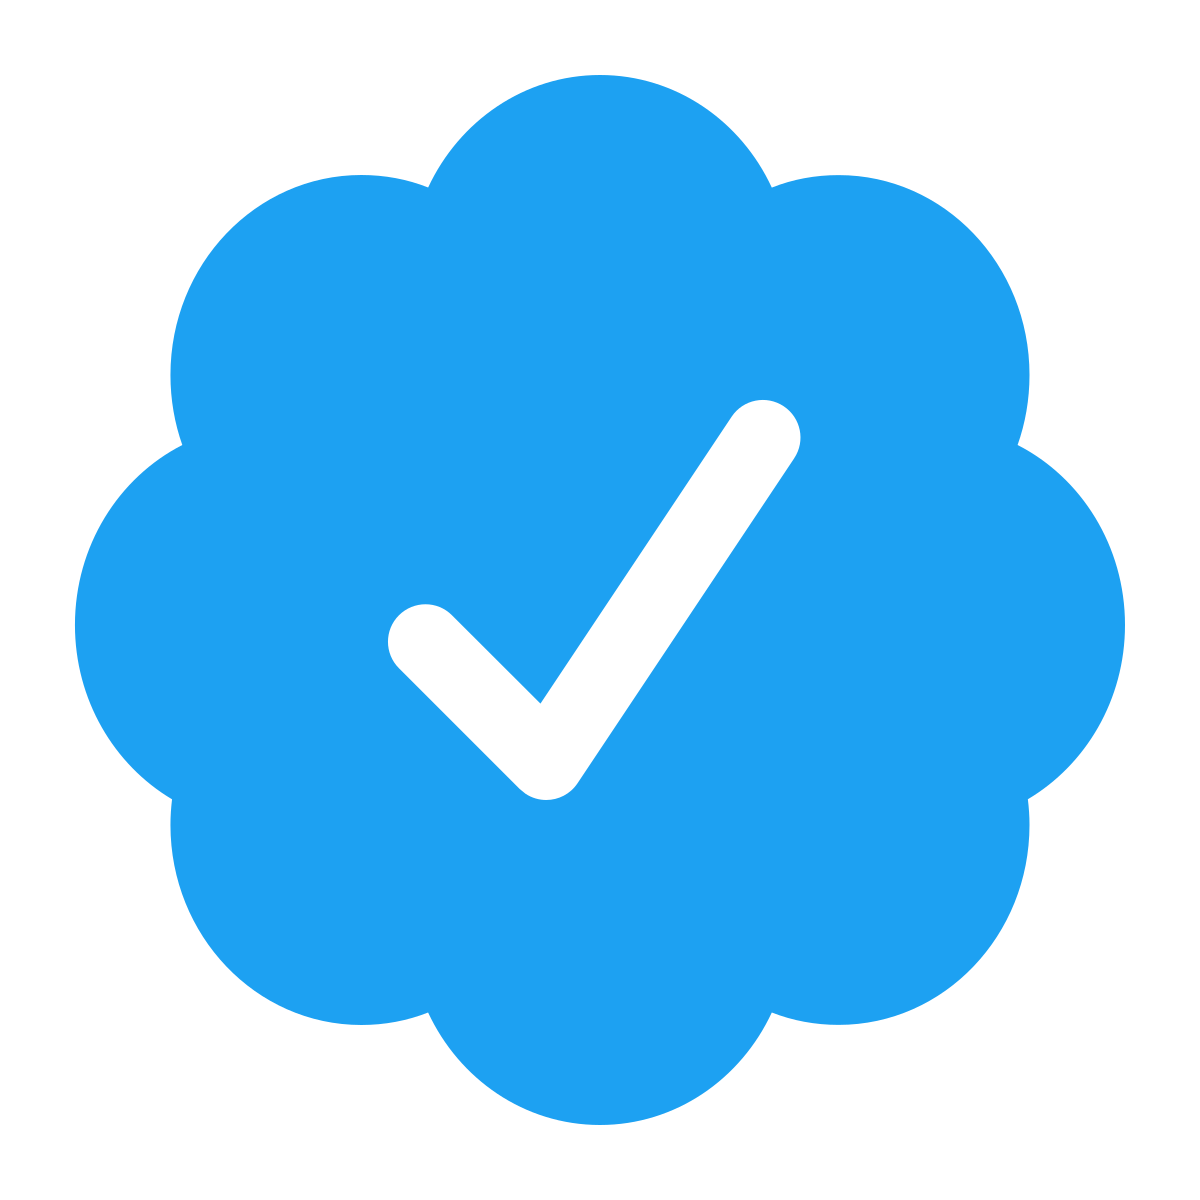 Twitter verification - Wikipedia